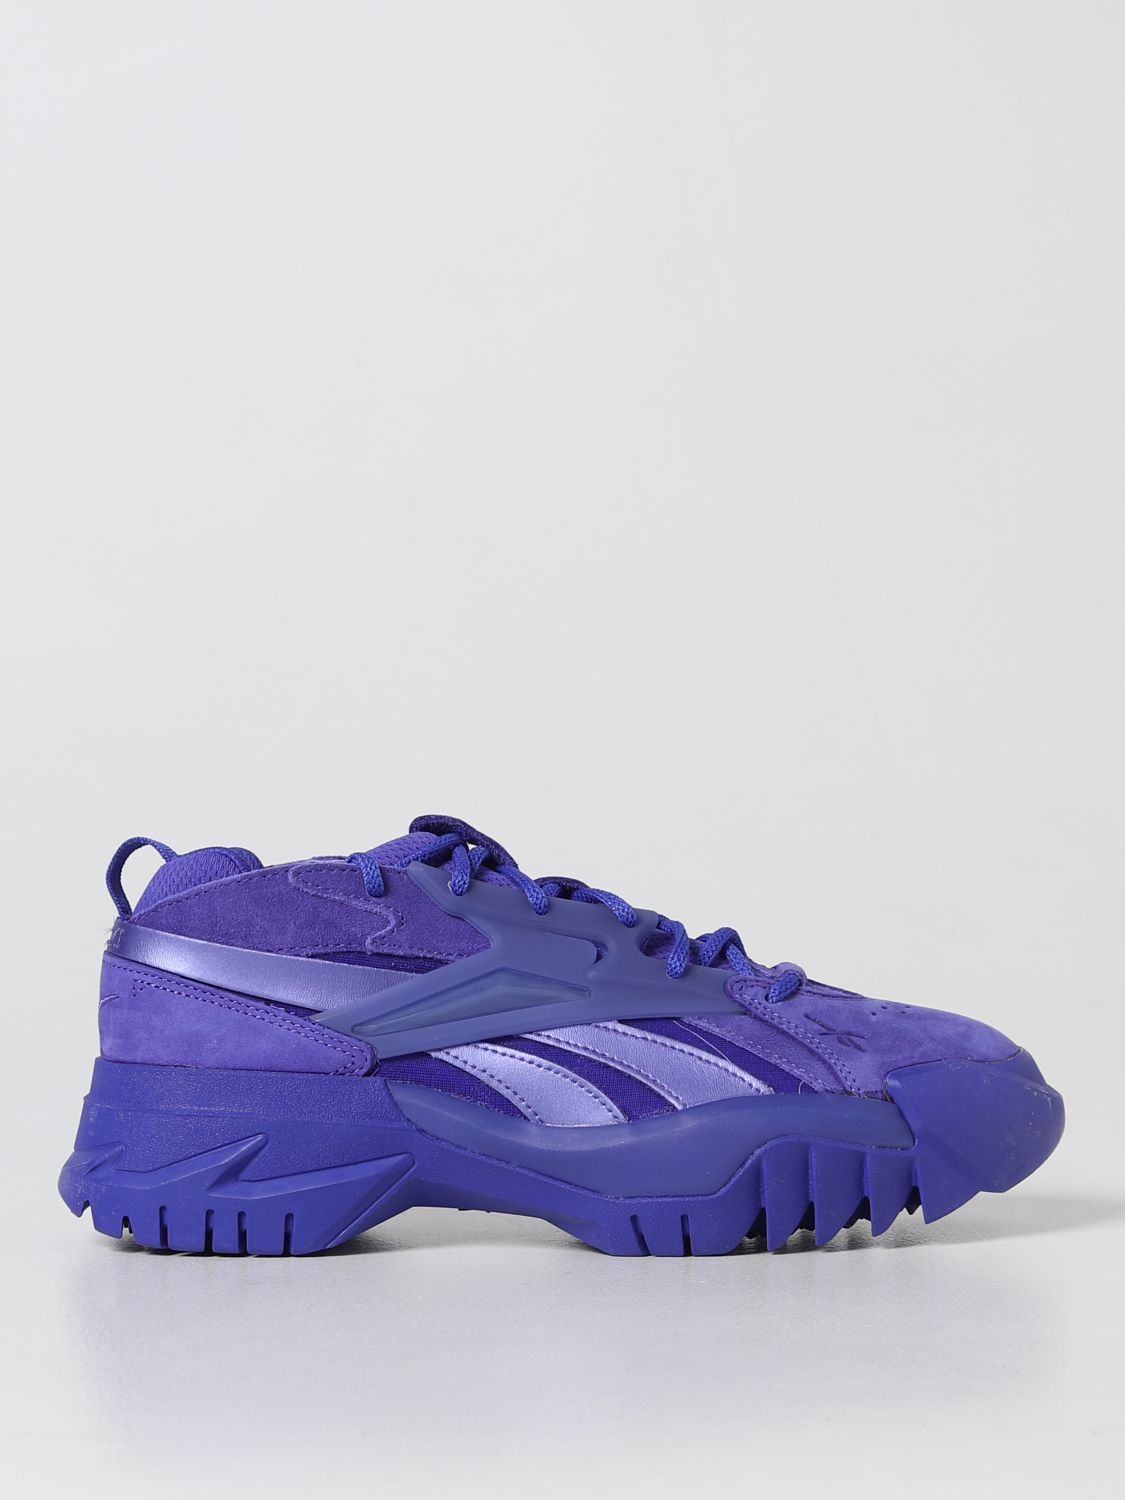 Zijdelings bende noot REEBOK: sneakers for woman - Violet | Reebok sneakers GX9659 online on  GIGLIO.COM